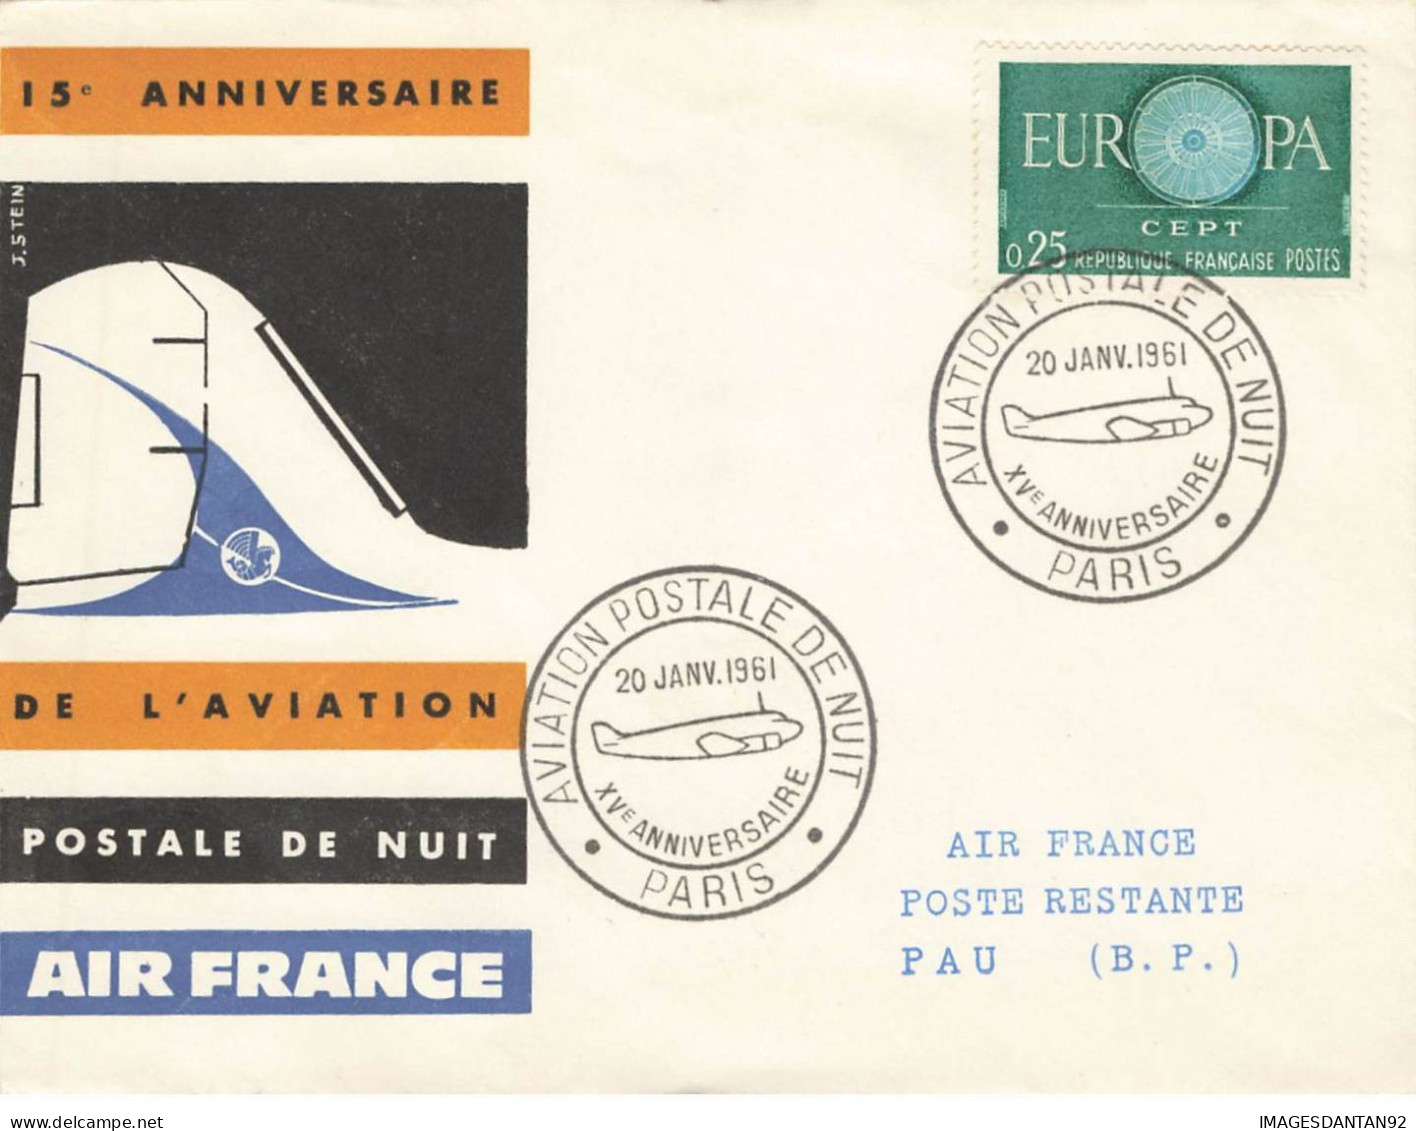 FRANCE #36364 15 EME ANNIVERSAIRE AVIATION POSTALE DE NUIT 1961 PARIS PAU - Briefe U. Dokumente